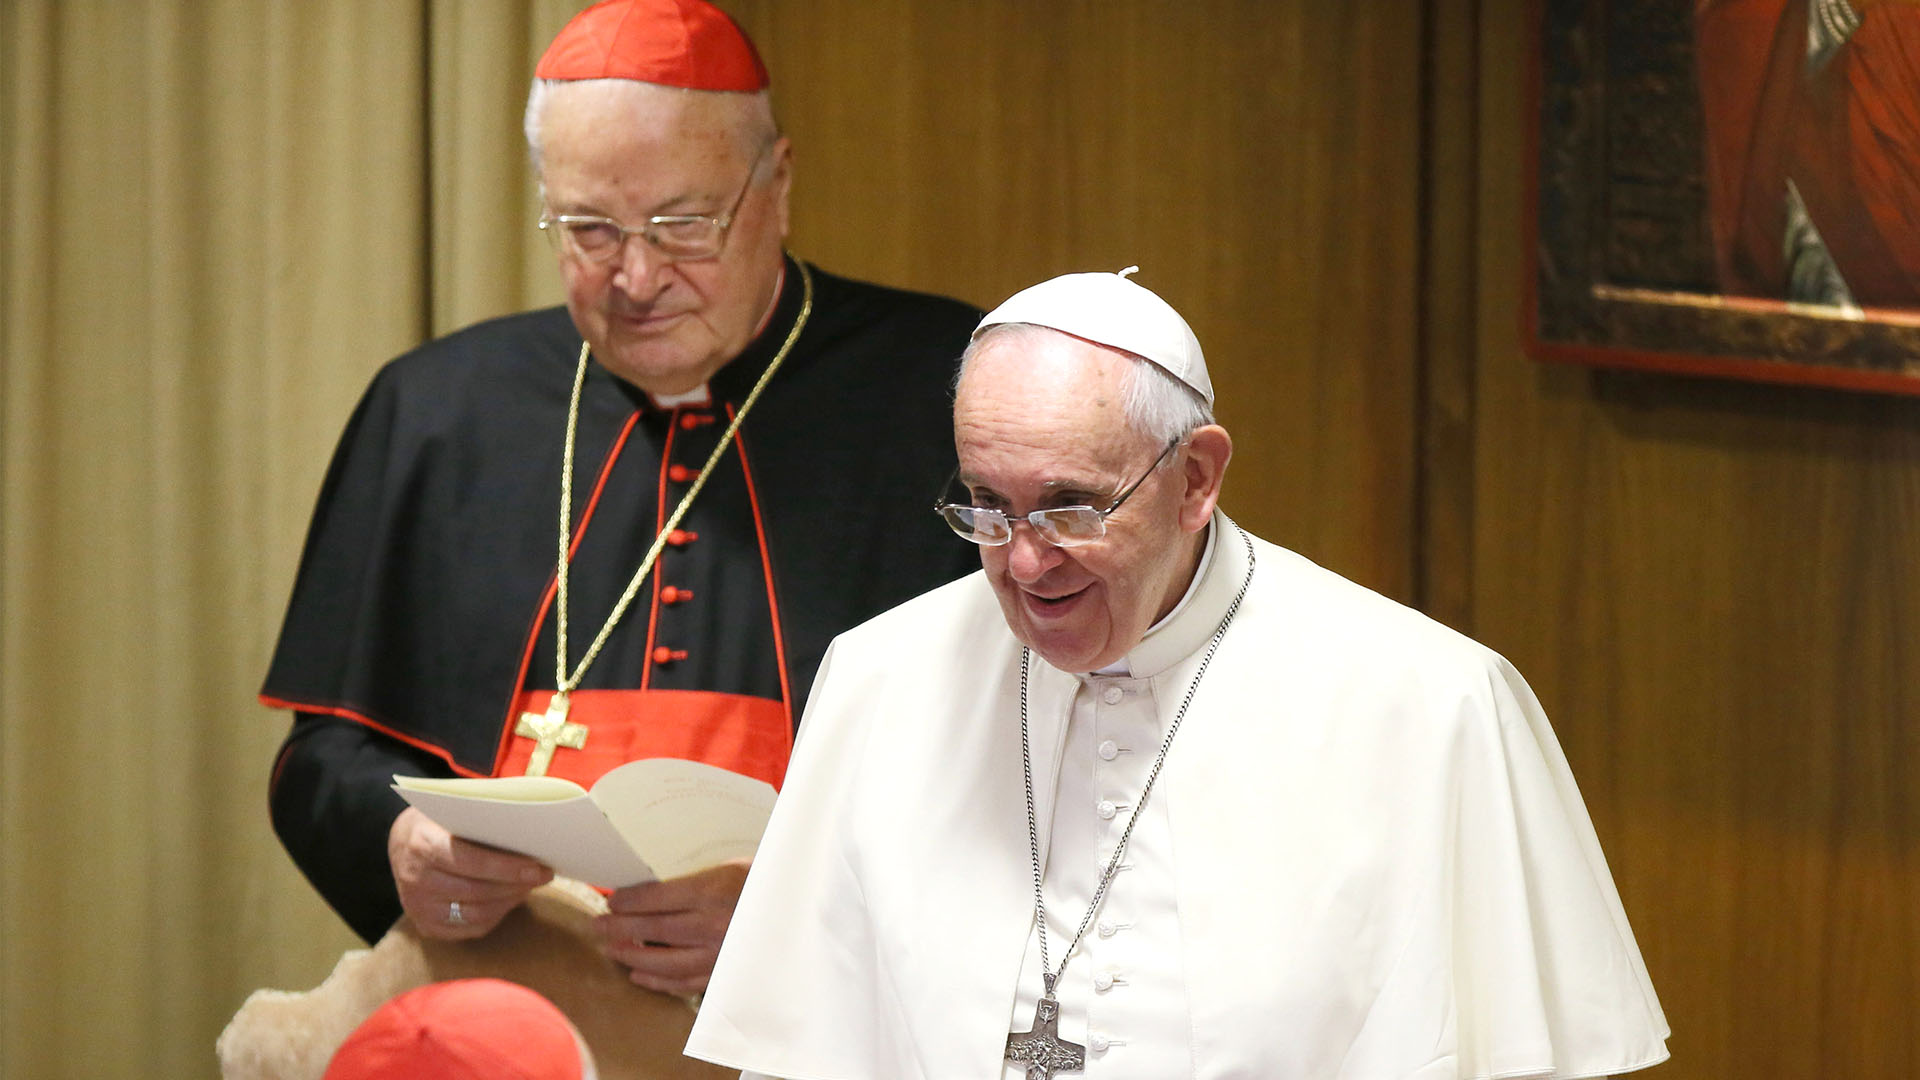 Murió el influyente cardenal Angelo Sodano, ex secretario de Estado  vaticano - Infobae